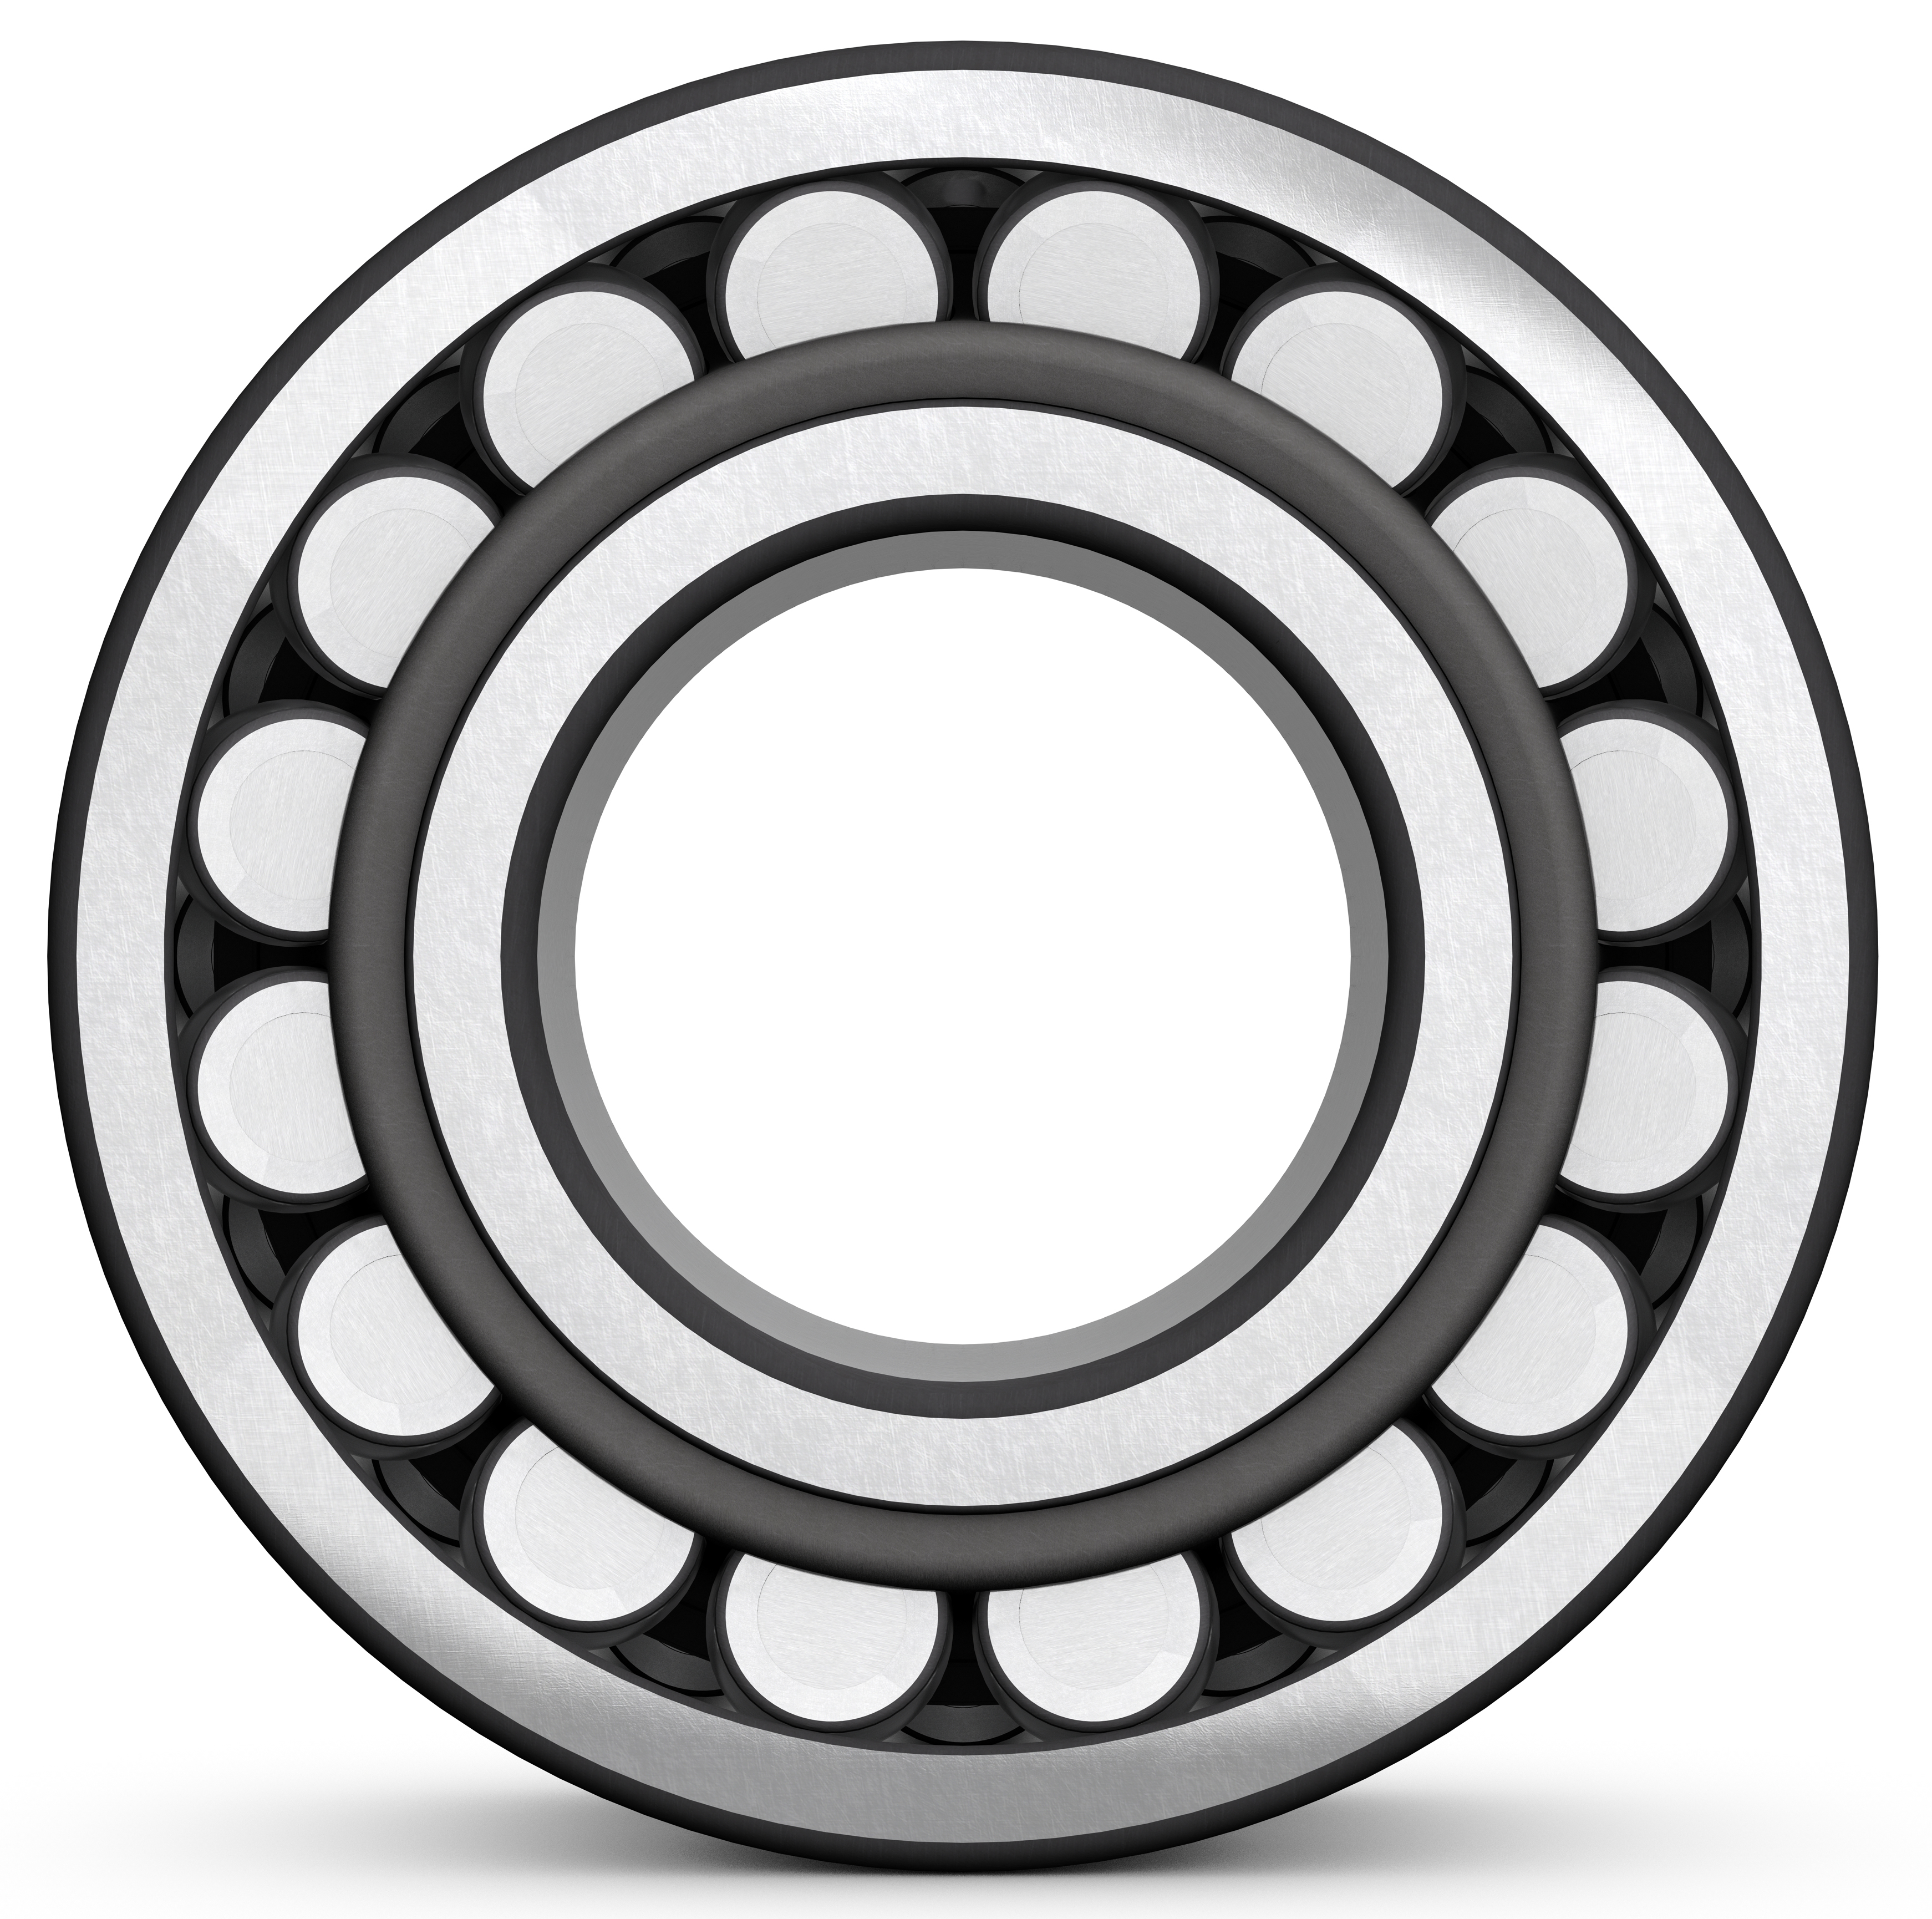 SPK ball bearings formed like a ring